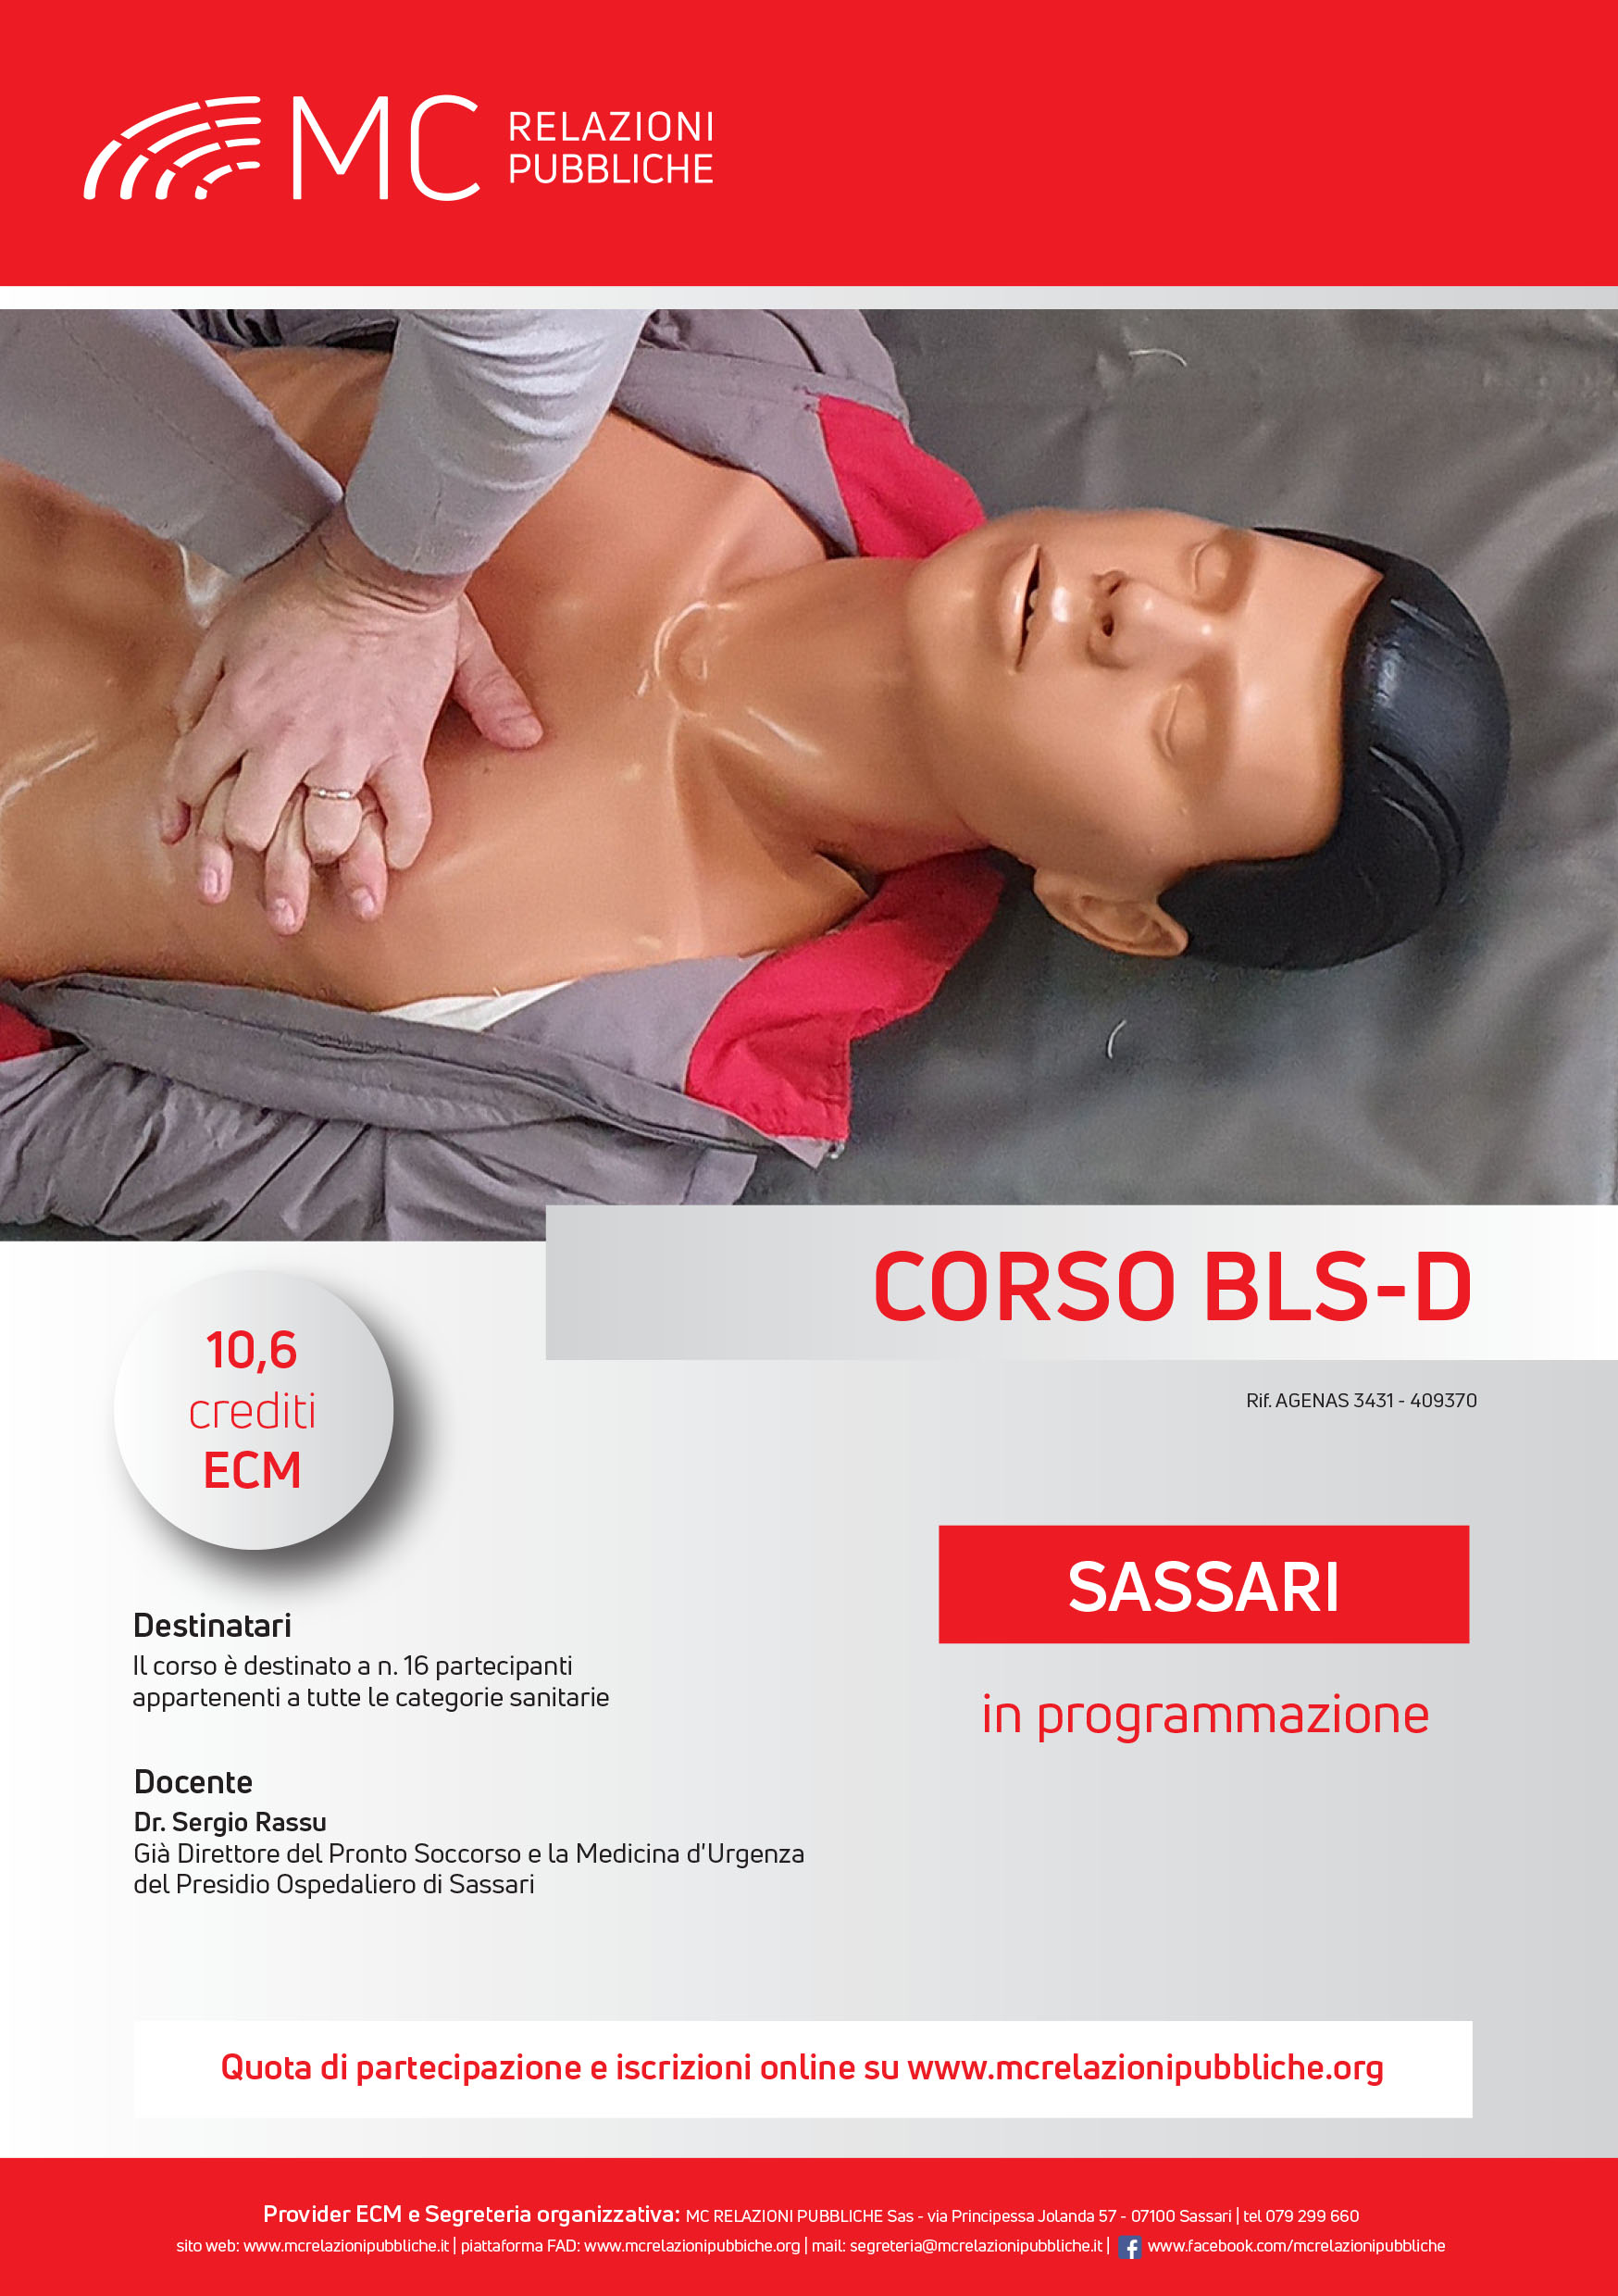 Corso BLS-D. Basic Life Support-Defibrillation - IN PROGRAMMAZIONE